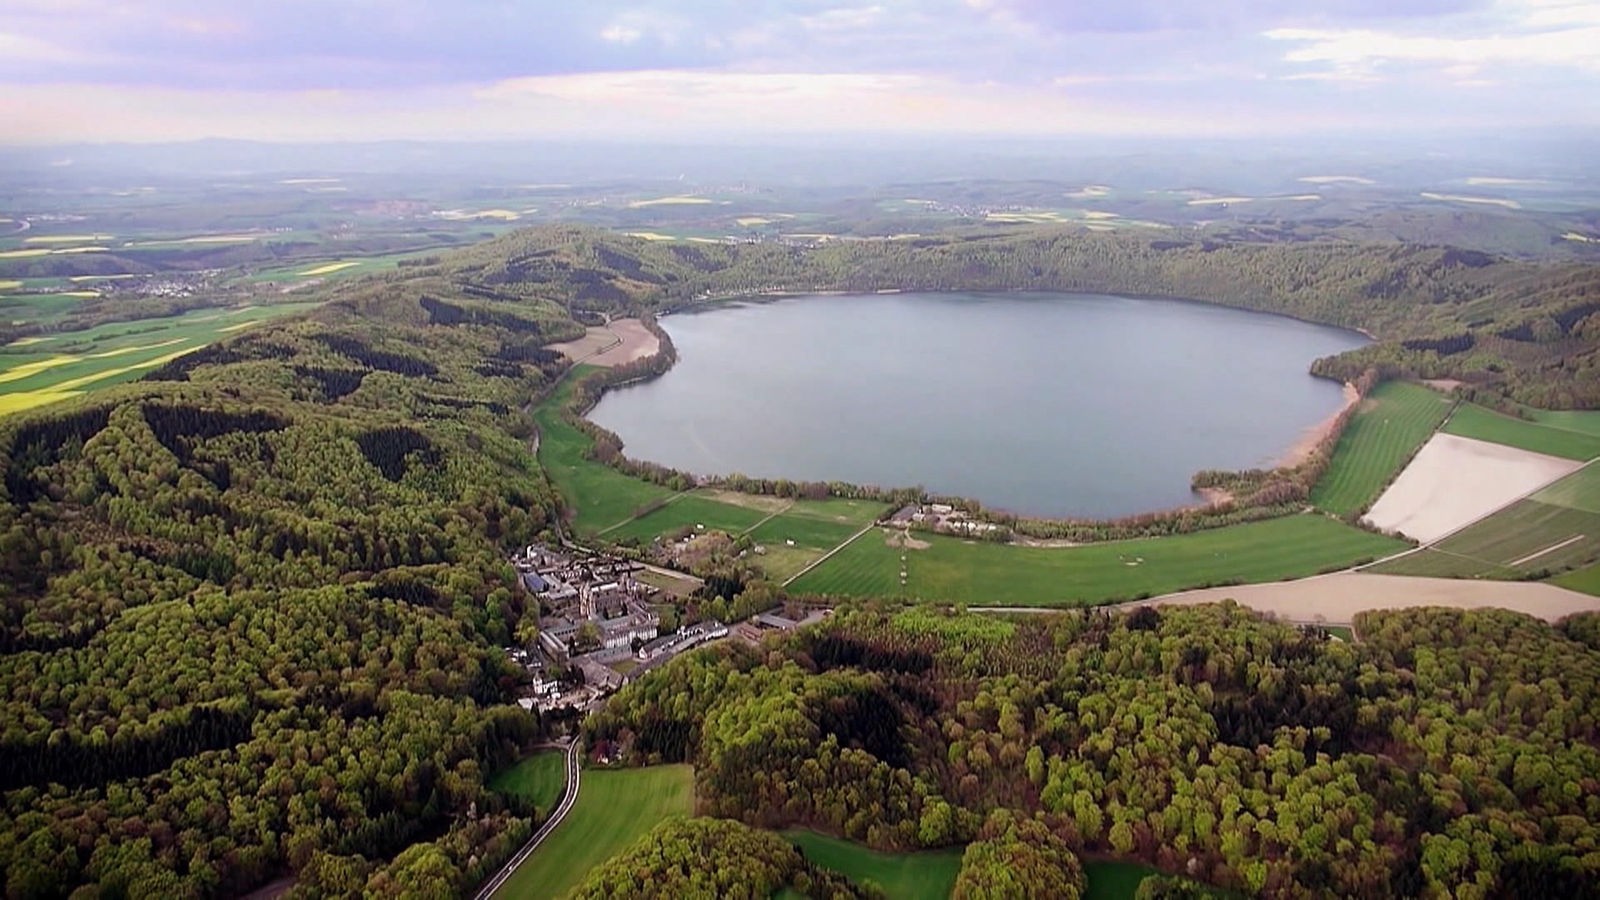 Luftbild: Blick auf einen Maarsee in der Eifel.